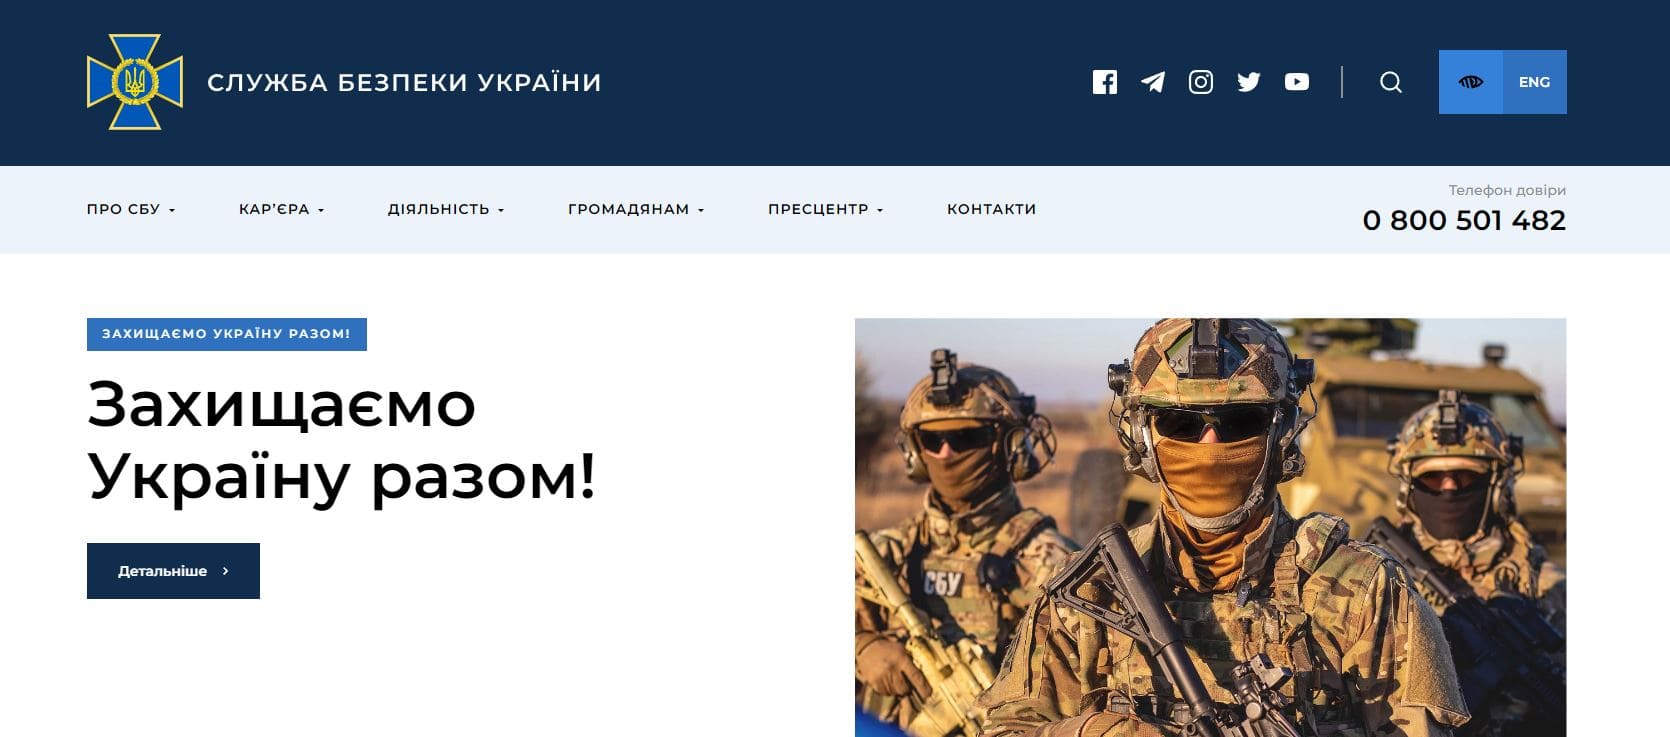 Служба безопасности Украины СБУ (ssu.gov.ua)